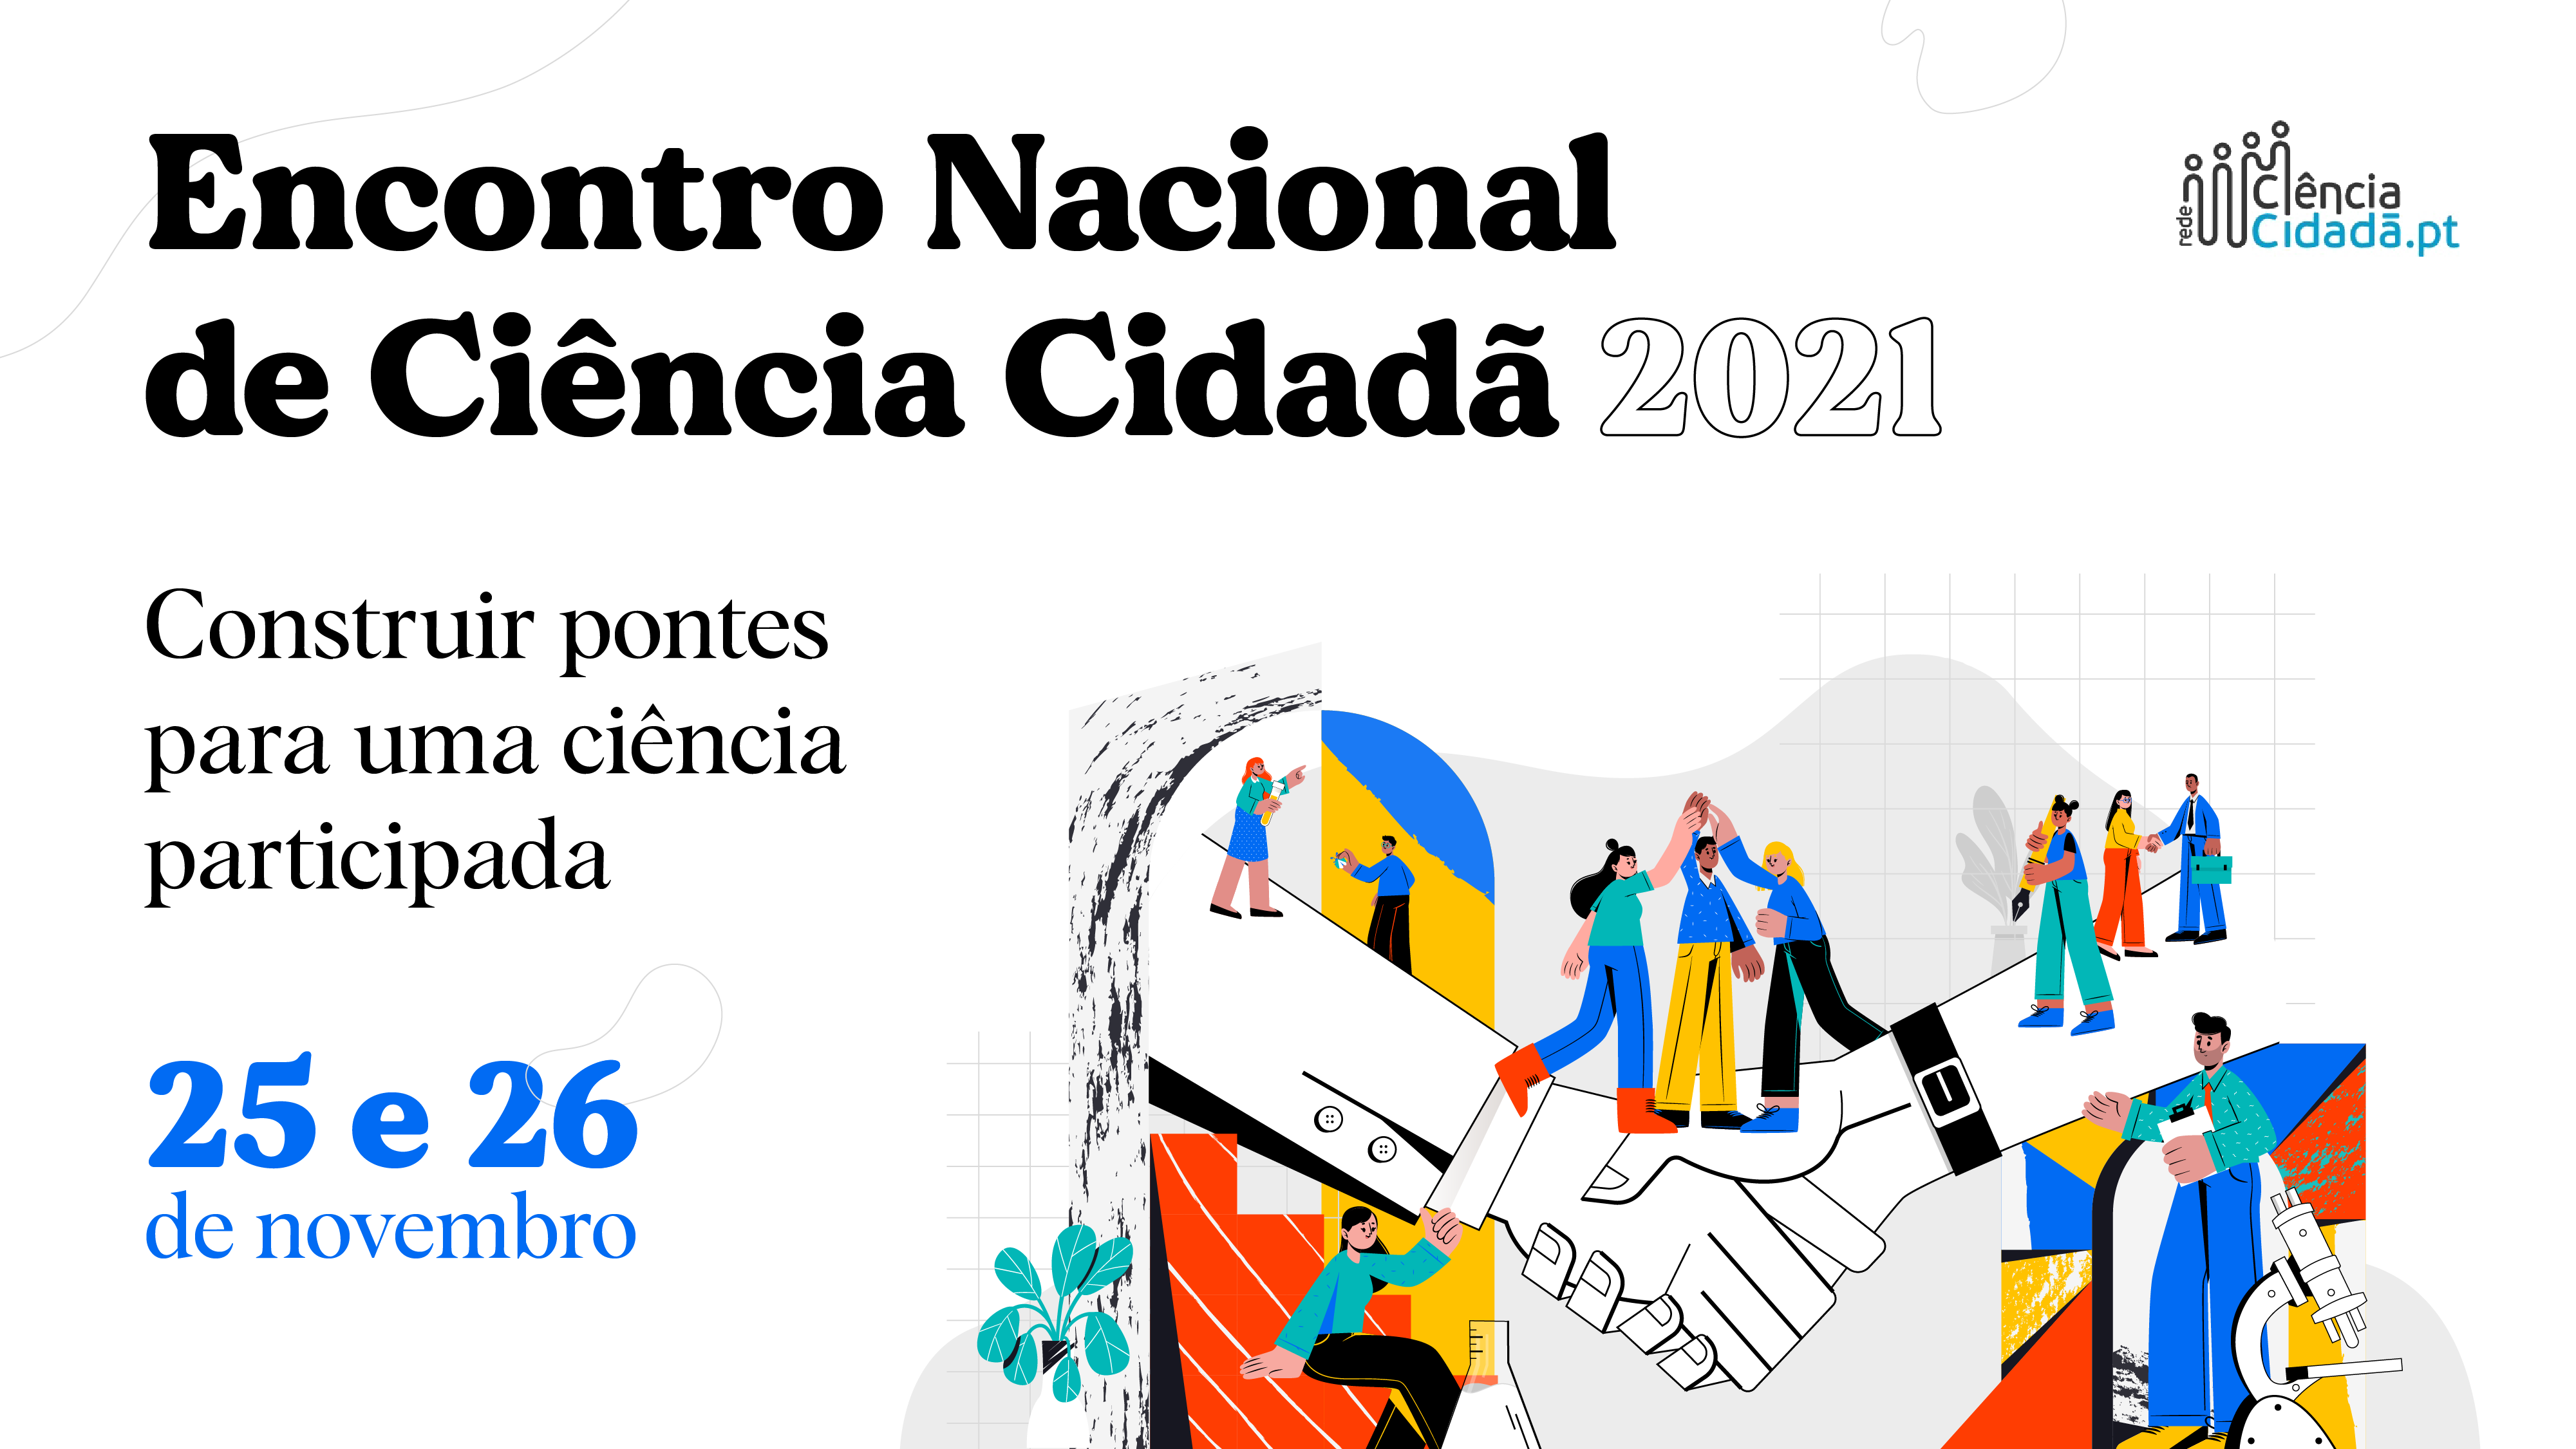 Encontro Nacional de Ciência Cidadã 2021 | Construir pontes para uma ciência participada